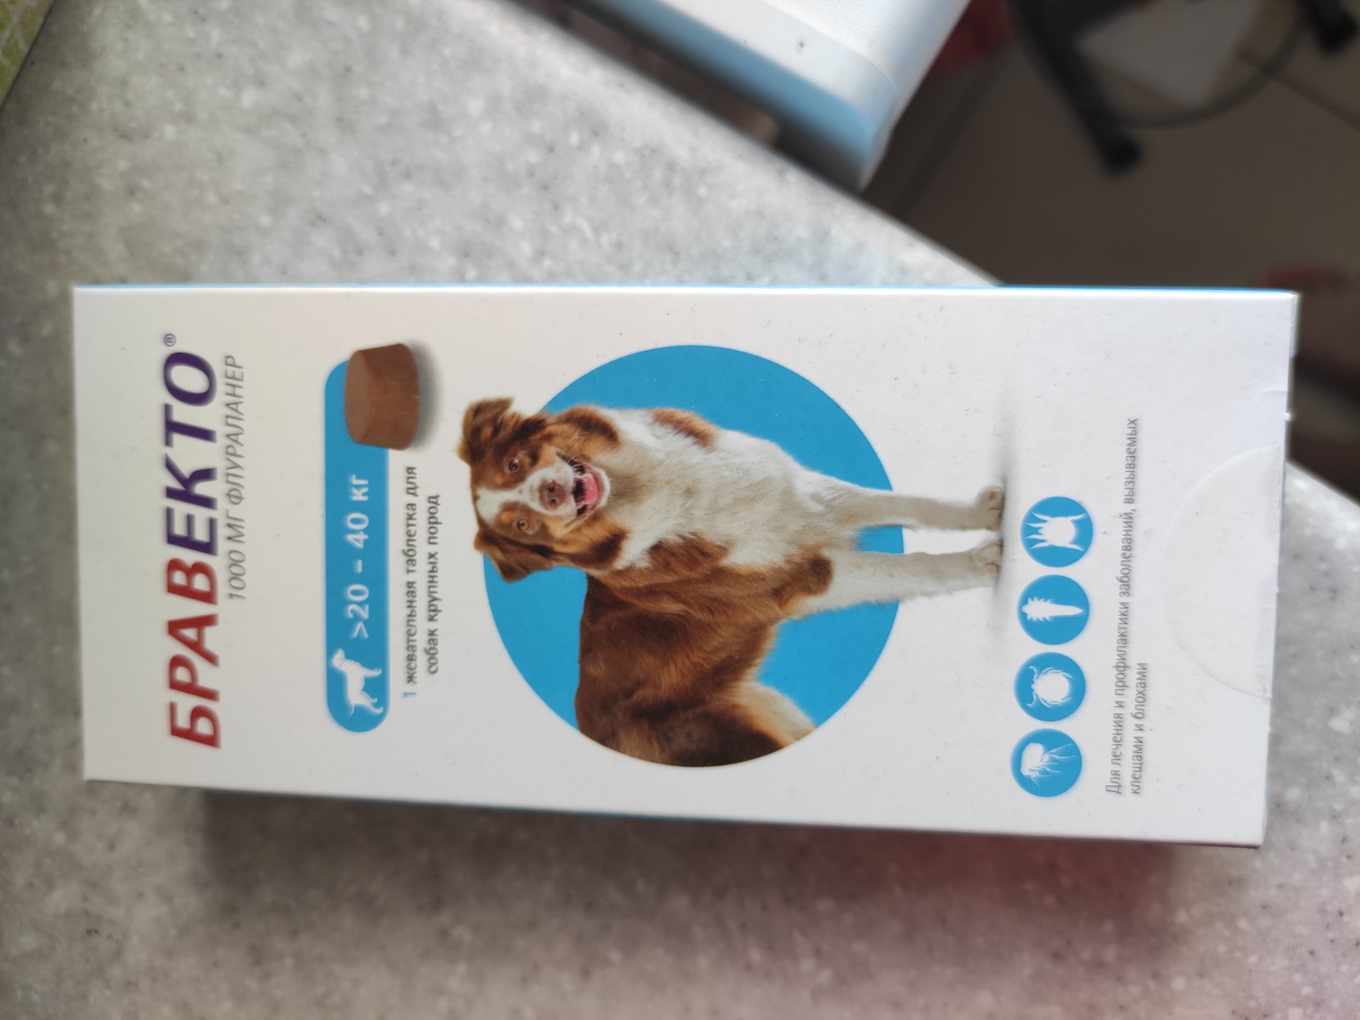 Бравекто купить аналог. Бравекто для собак 20-40 кг таблетки. Bravecto для собак 20-40кг таблетки. Бравекто от клещей для собак 40 кг. Флураланер Бравекто 1000 мг для собак 20-40 кг.